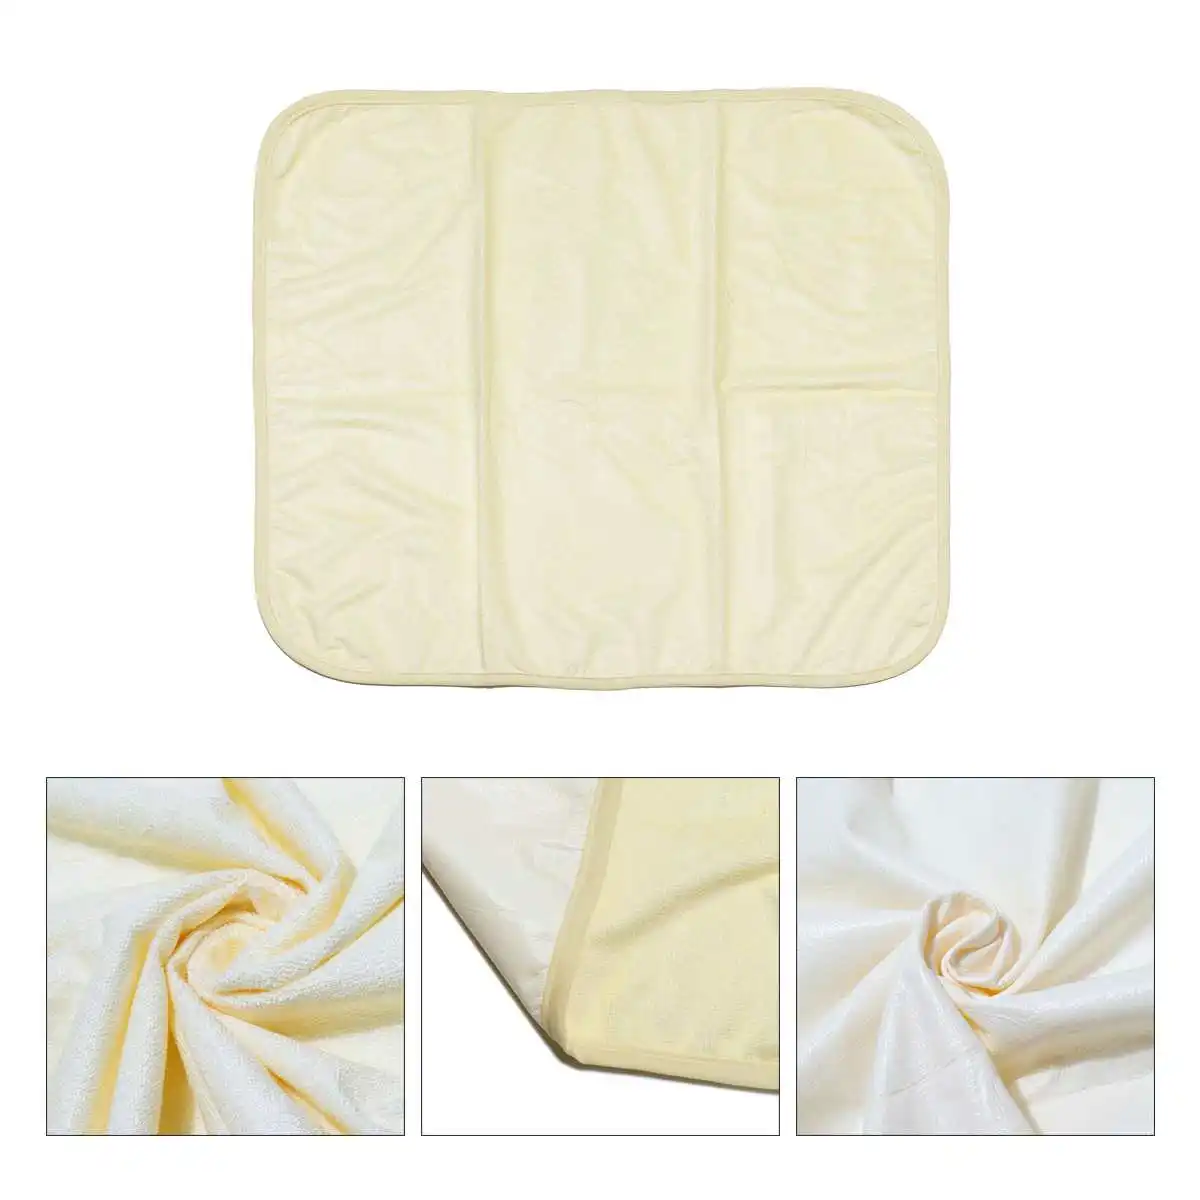 Водонепроницаемый моющийся многоразовый коврик для кровати для детей, для детей, для пожилых, для недержания влага в кровати, чехол для матраса, 3 цвета, 7 размеров - Цвет: Цвет: желтый